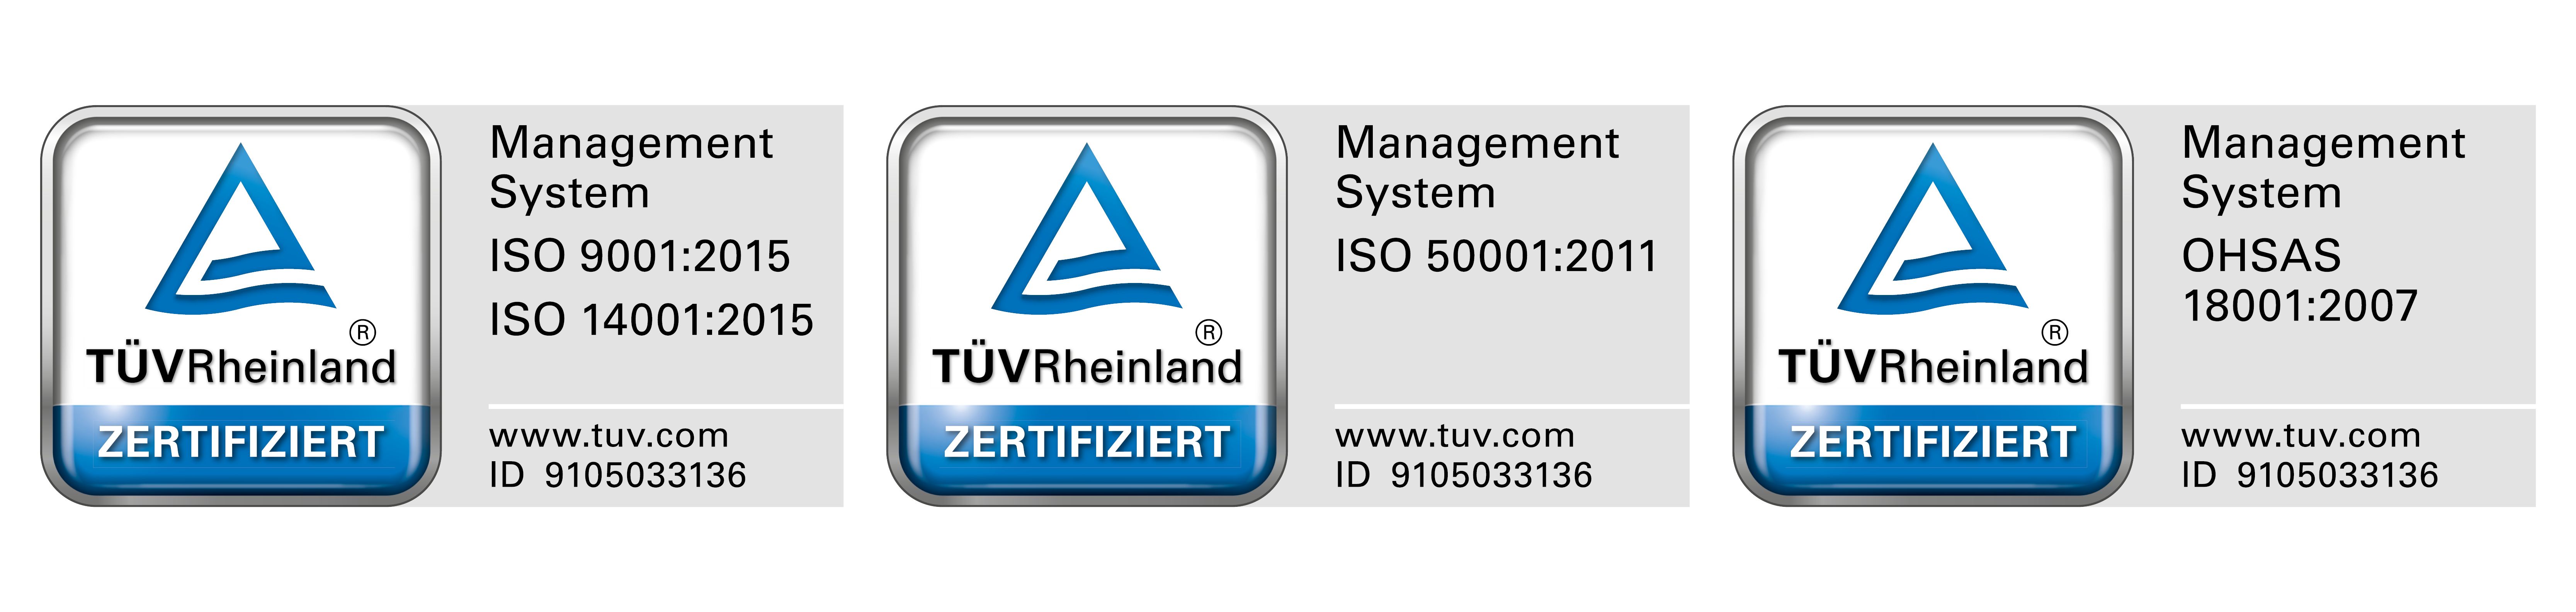 Druckmedien nachhaltige, zertifizierte Managementsysteme – blaue Prueflogos TÜV Rheinland 